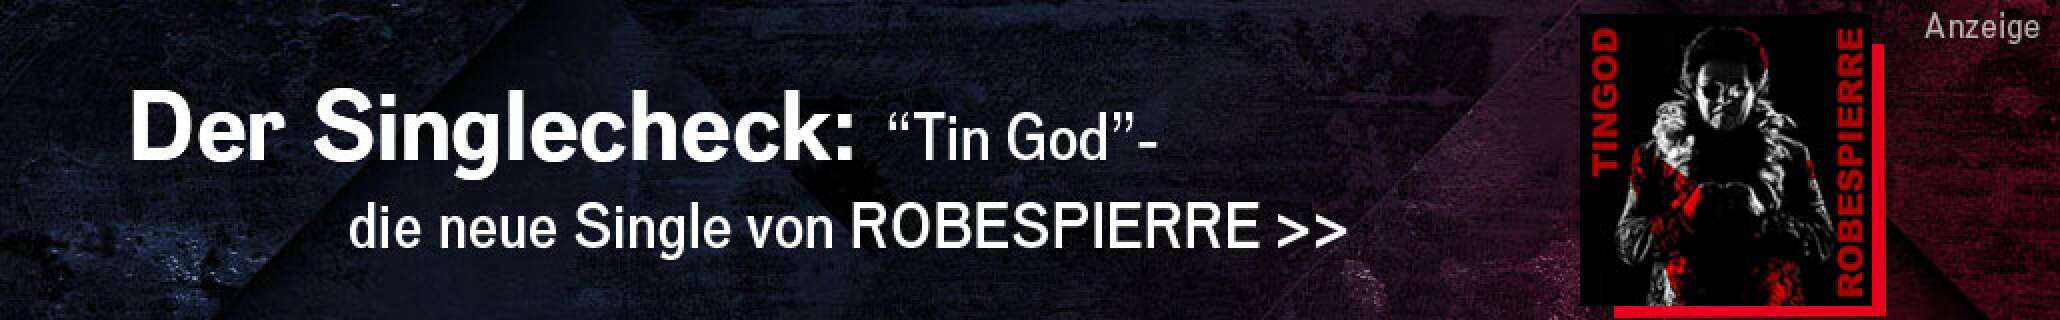 Werbeanzeige der Band ROBESPIERRE - zu sehen sind ein Albumcover und der Text: "Der Singlecheck: "Tin God" - die neue Single von ROBESPIERRE"